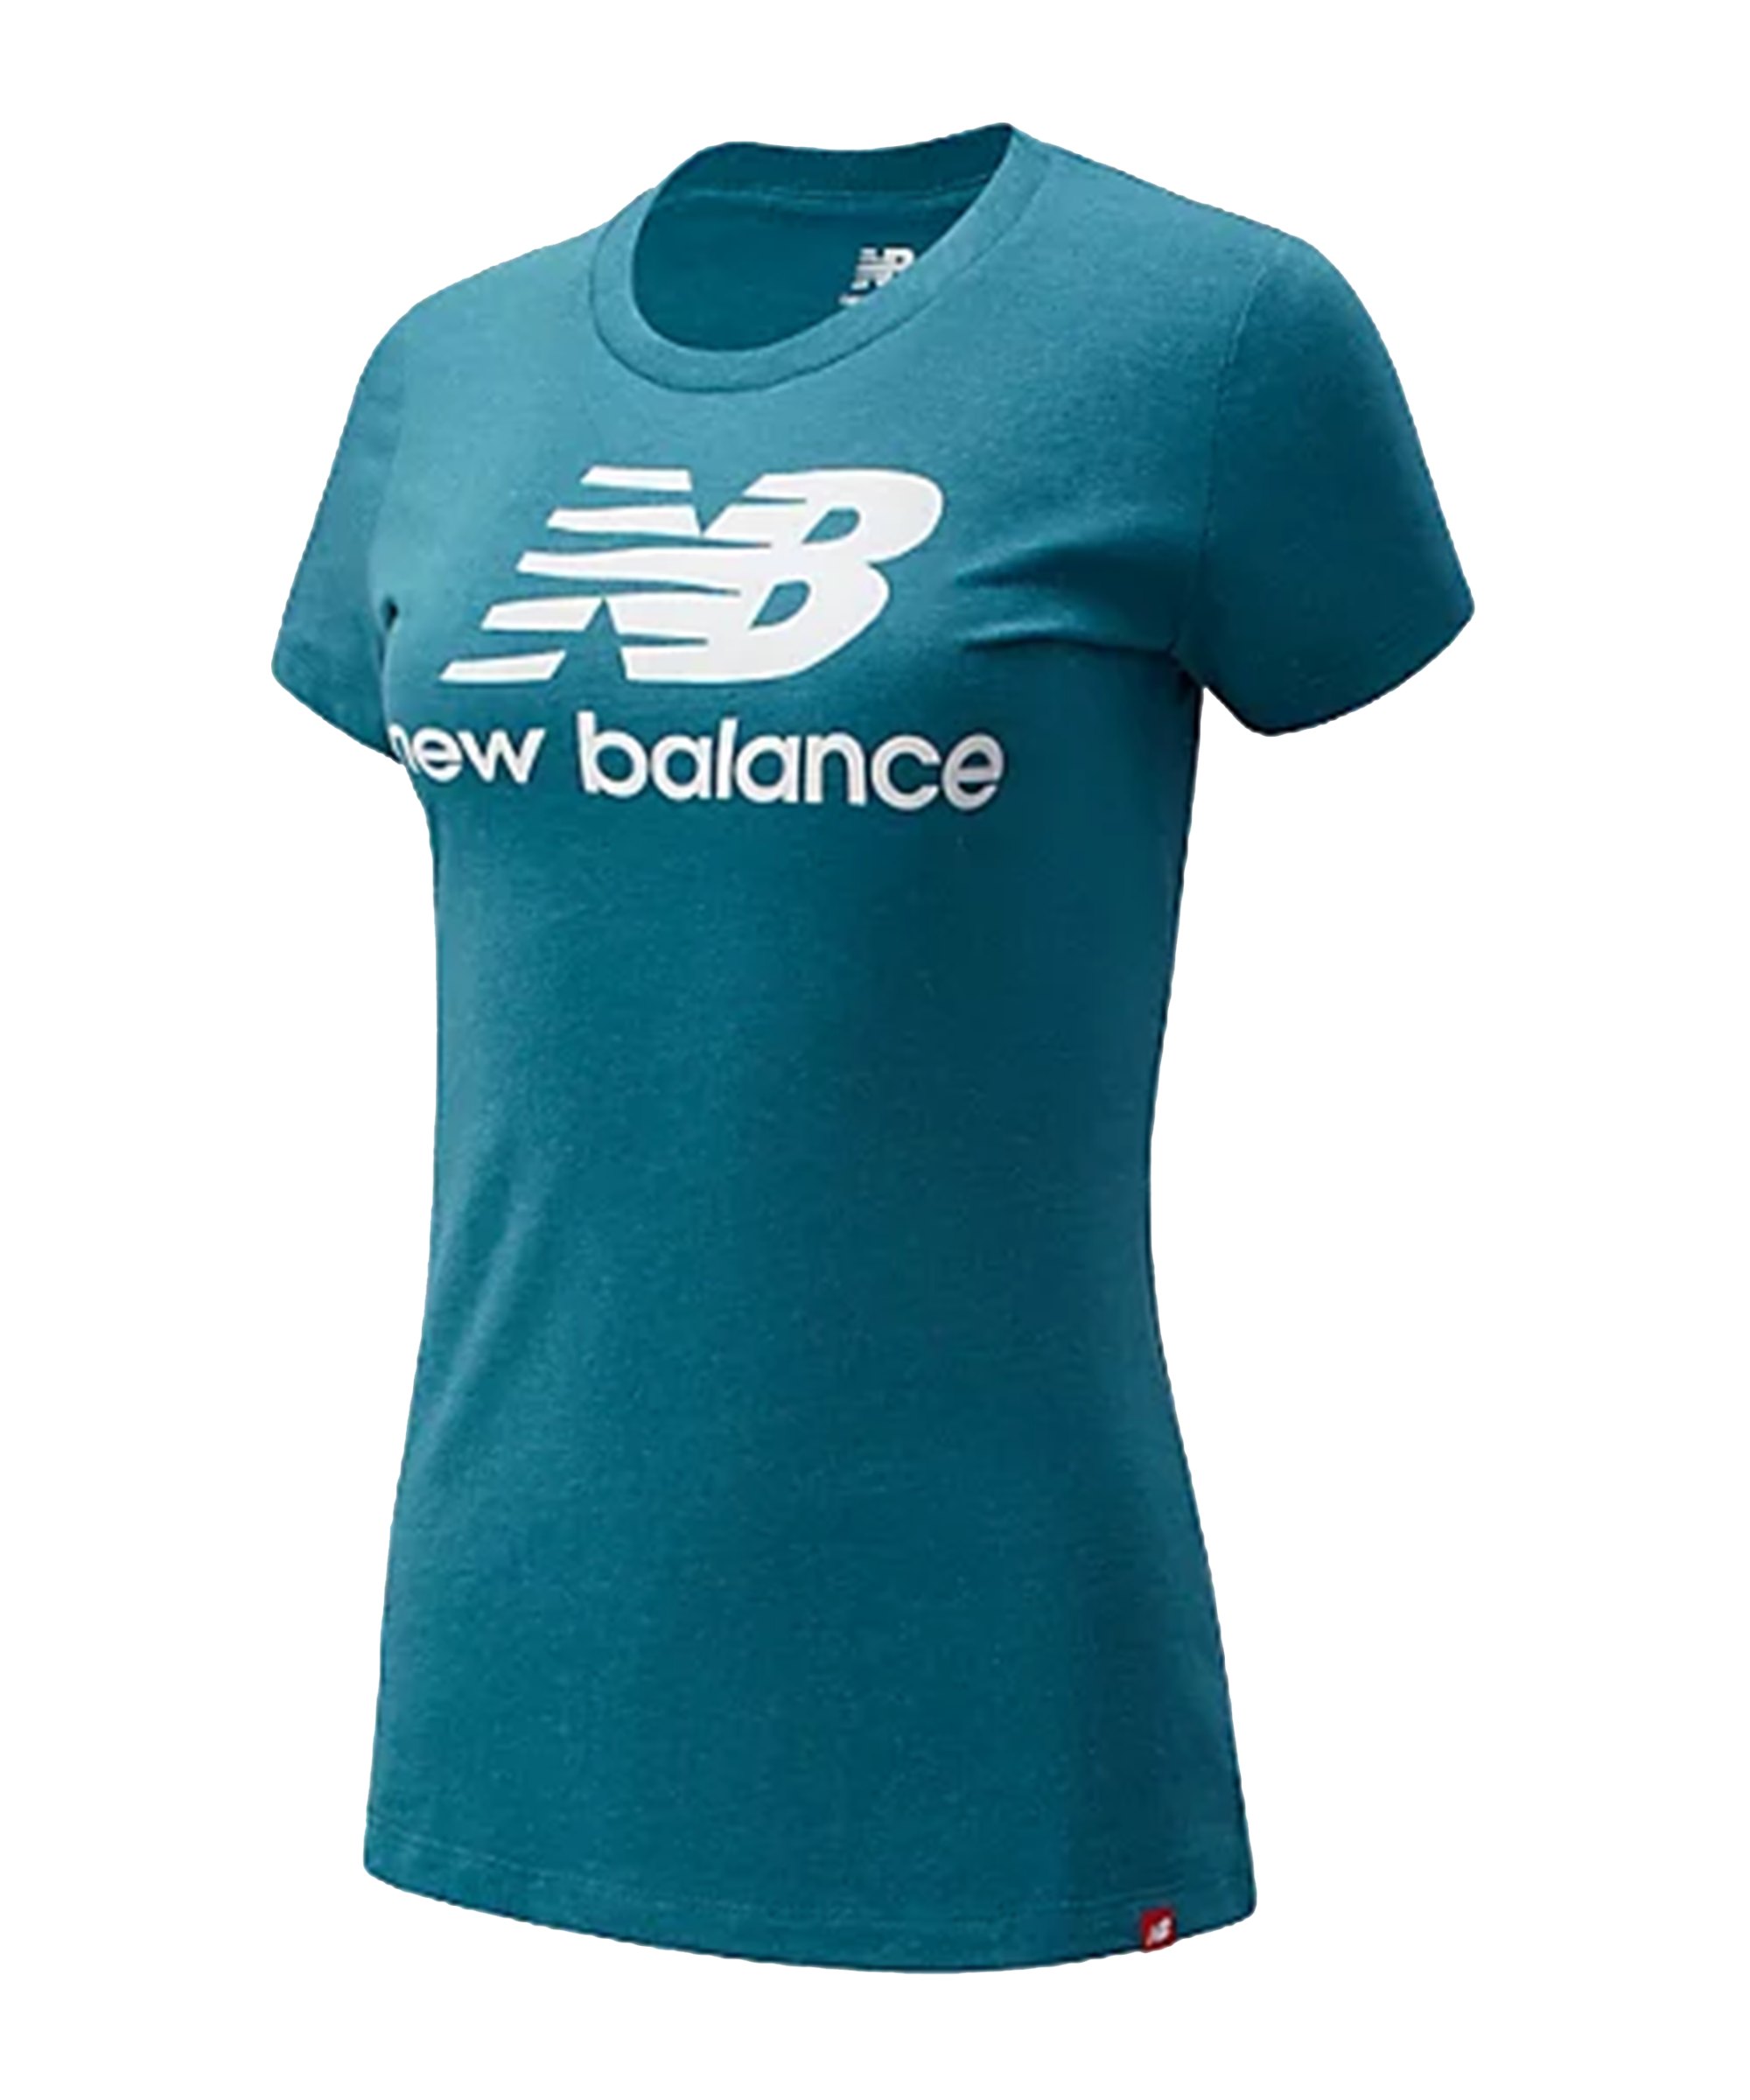 New Balance Ess Stacked Logo T-Shirt Damen FDEP - gruen